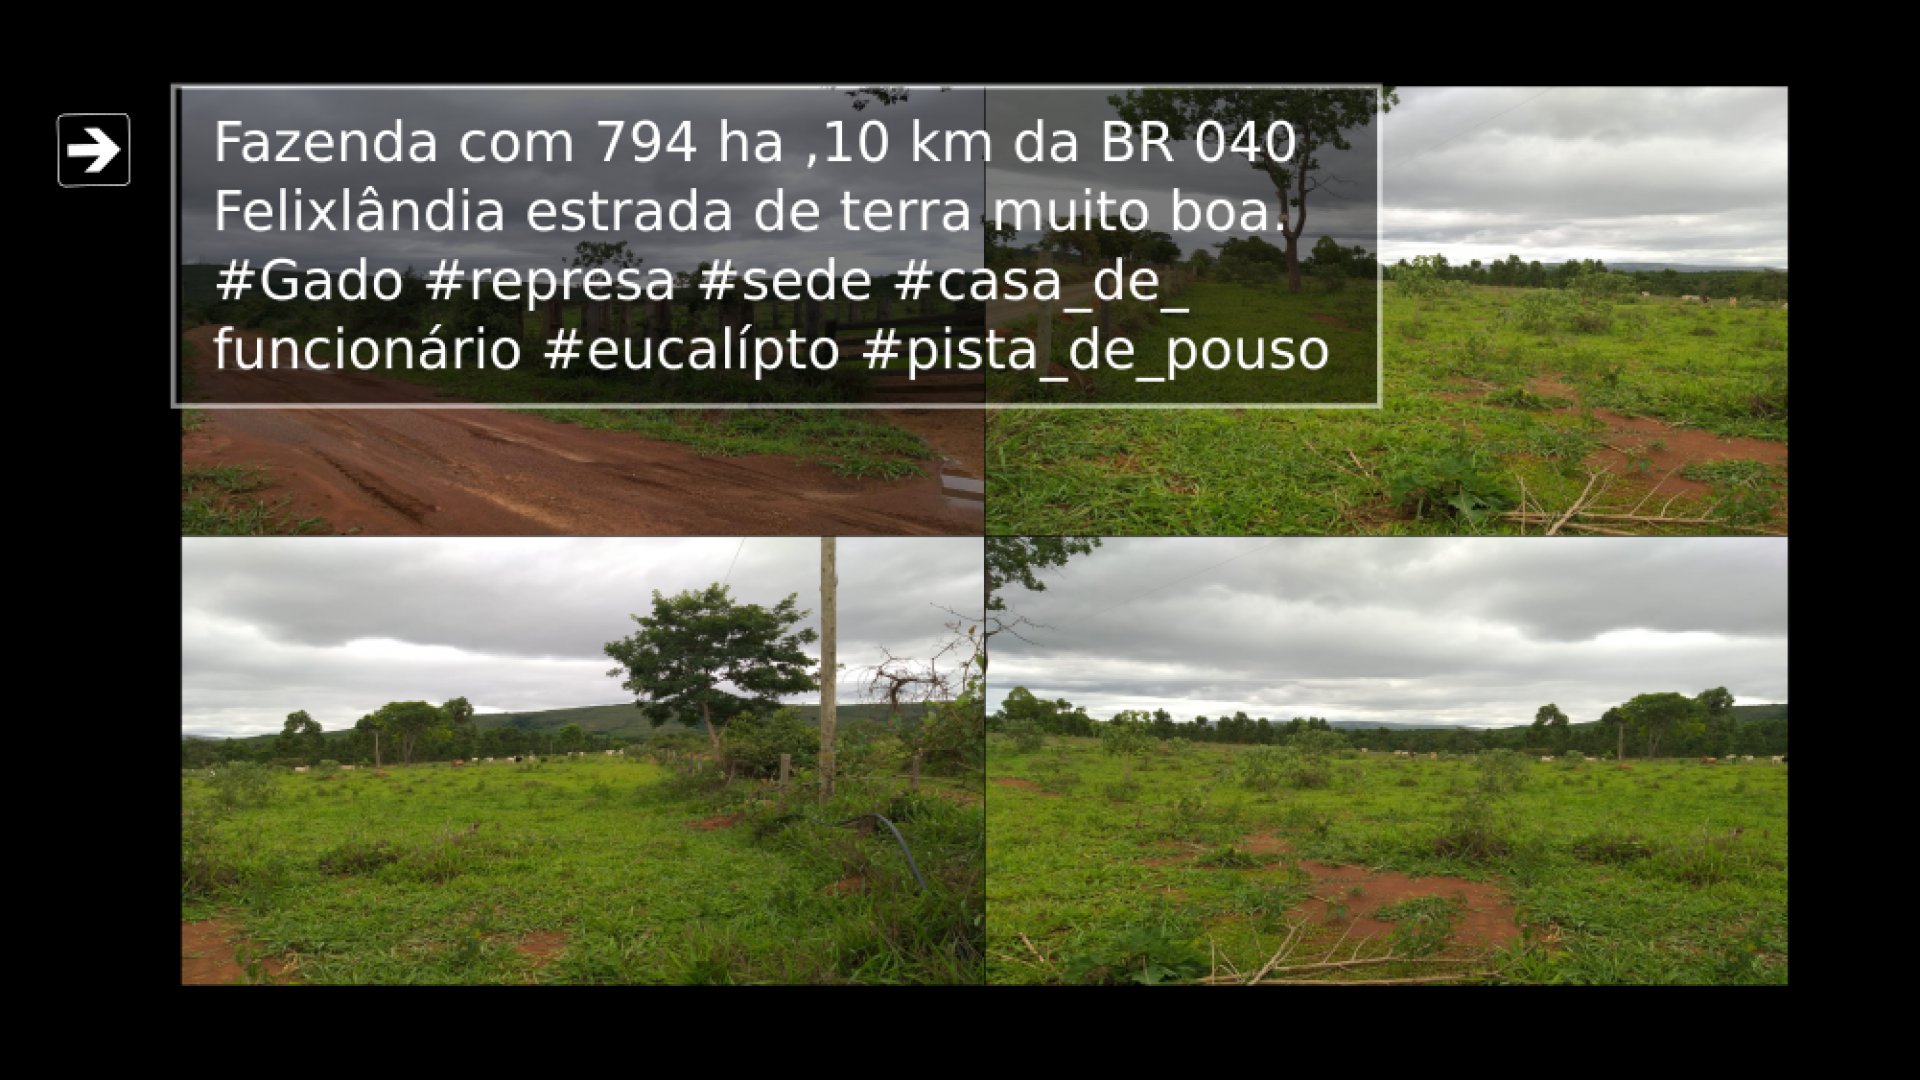 Vendo Fazenda de 794 hectares- Felixlândia-MG 04